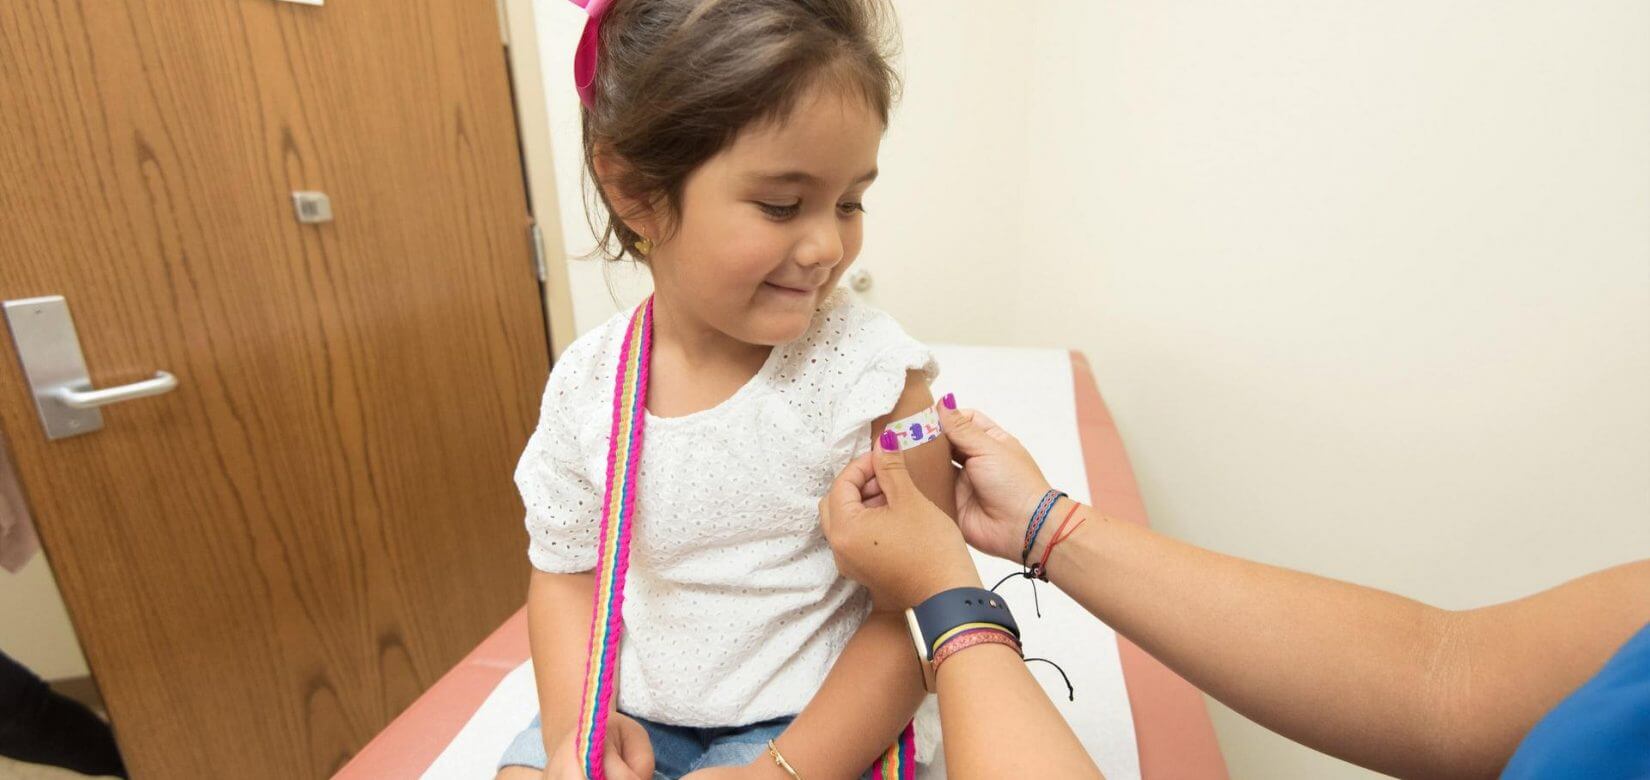 Εμβόλιο Pfizer: Ξεκινούν οι εμβολιασμοί για παιδιά ηλικίας 5-11 ετών - Πράσινος φως στις ΗΠΑ